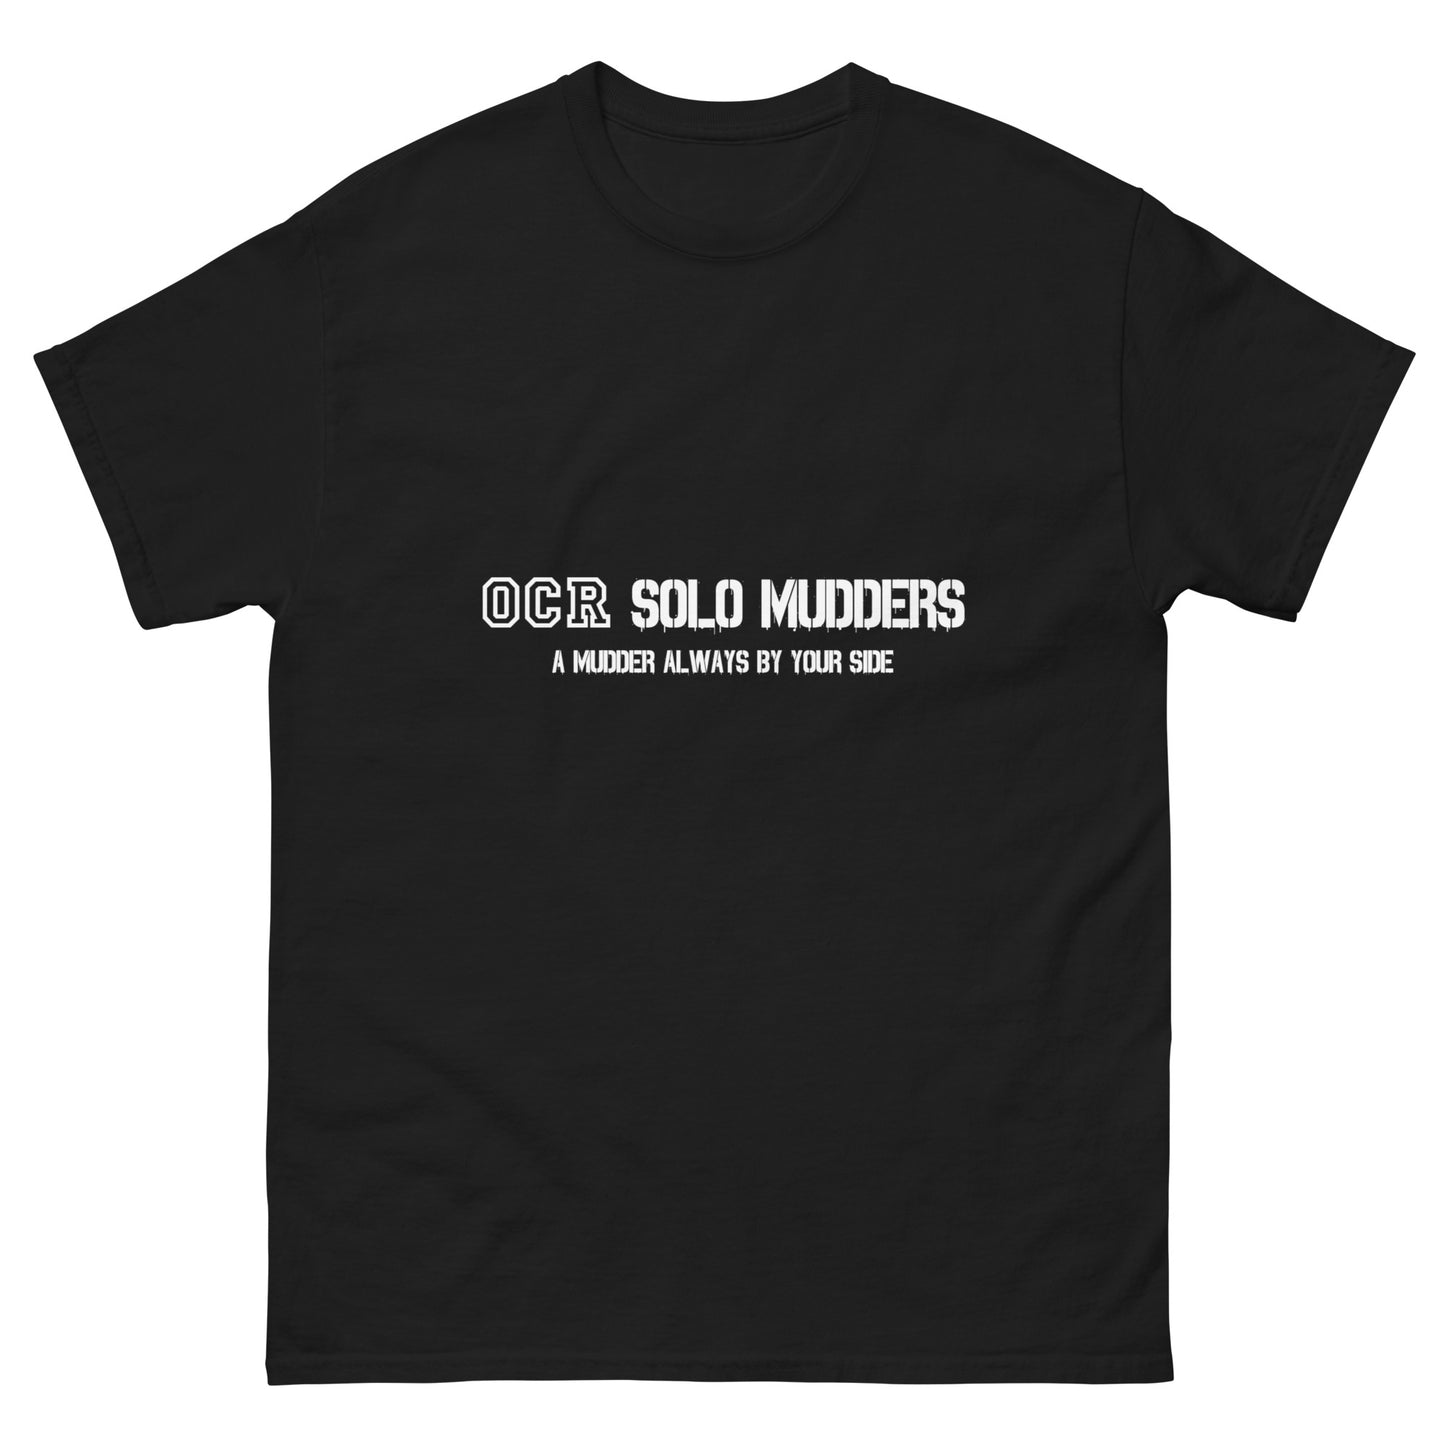 Men's classic social t-shirt